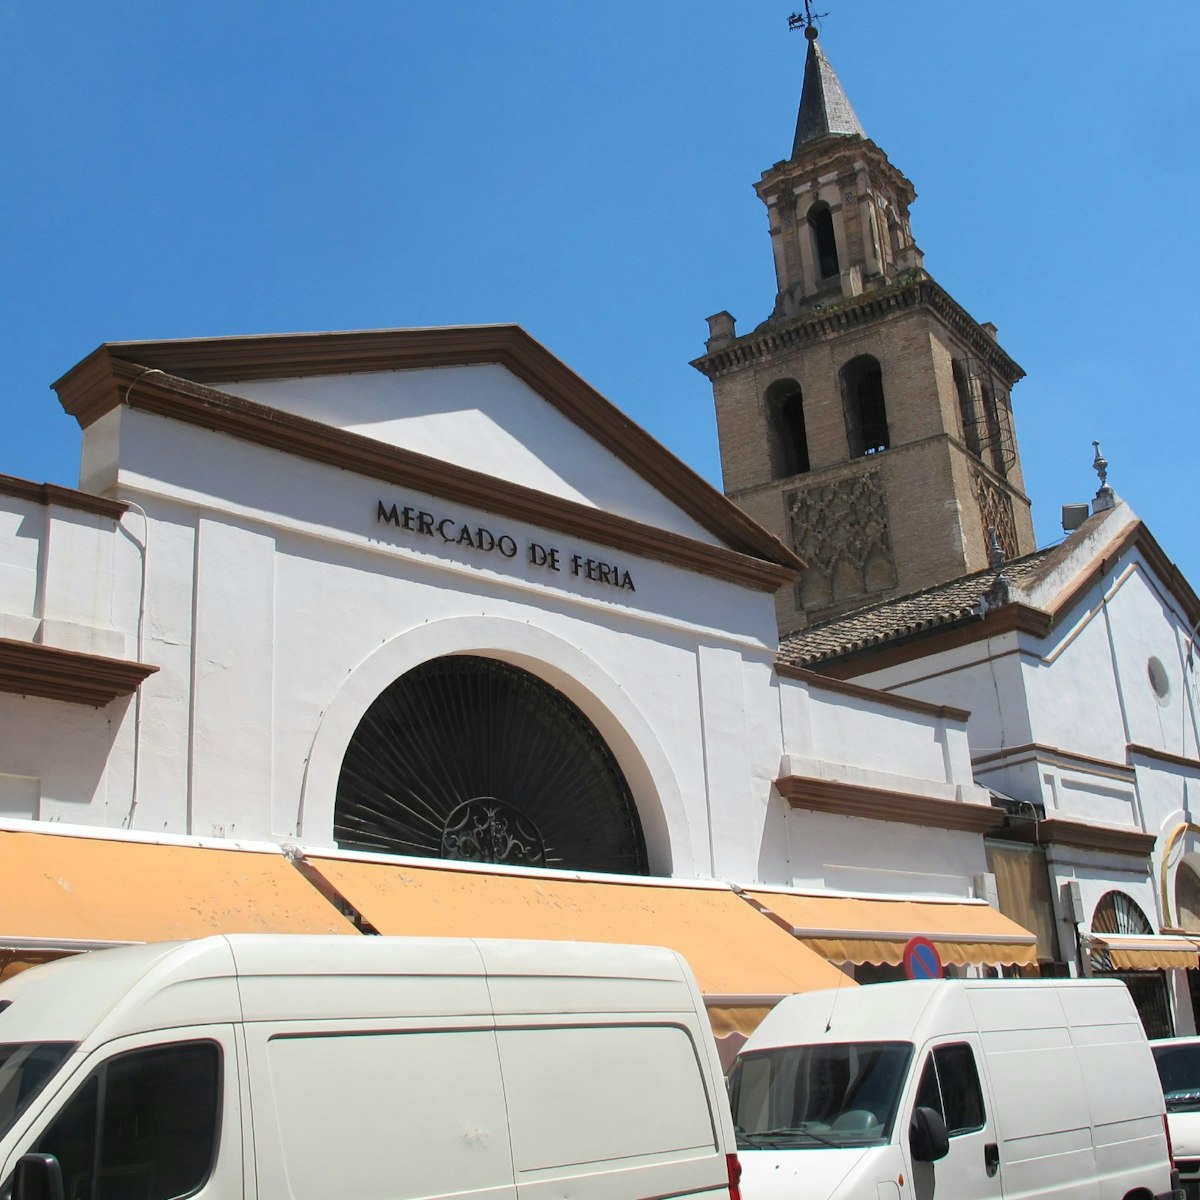 Market facade with vans and church, Mercado de Feria.